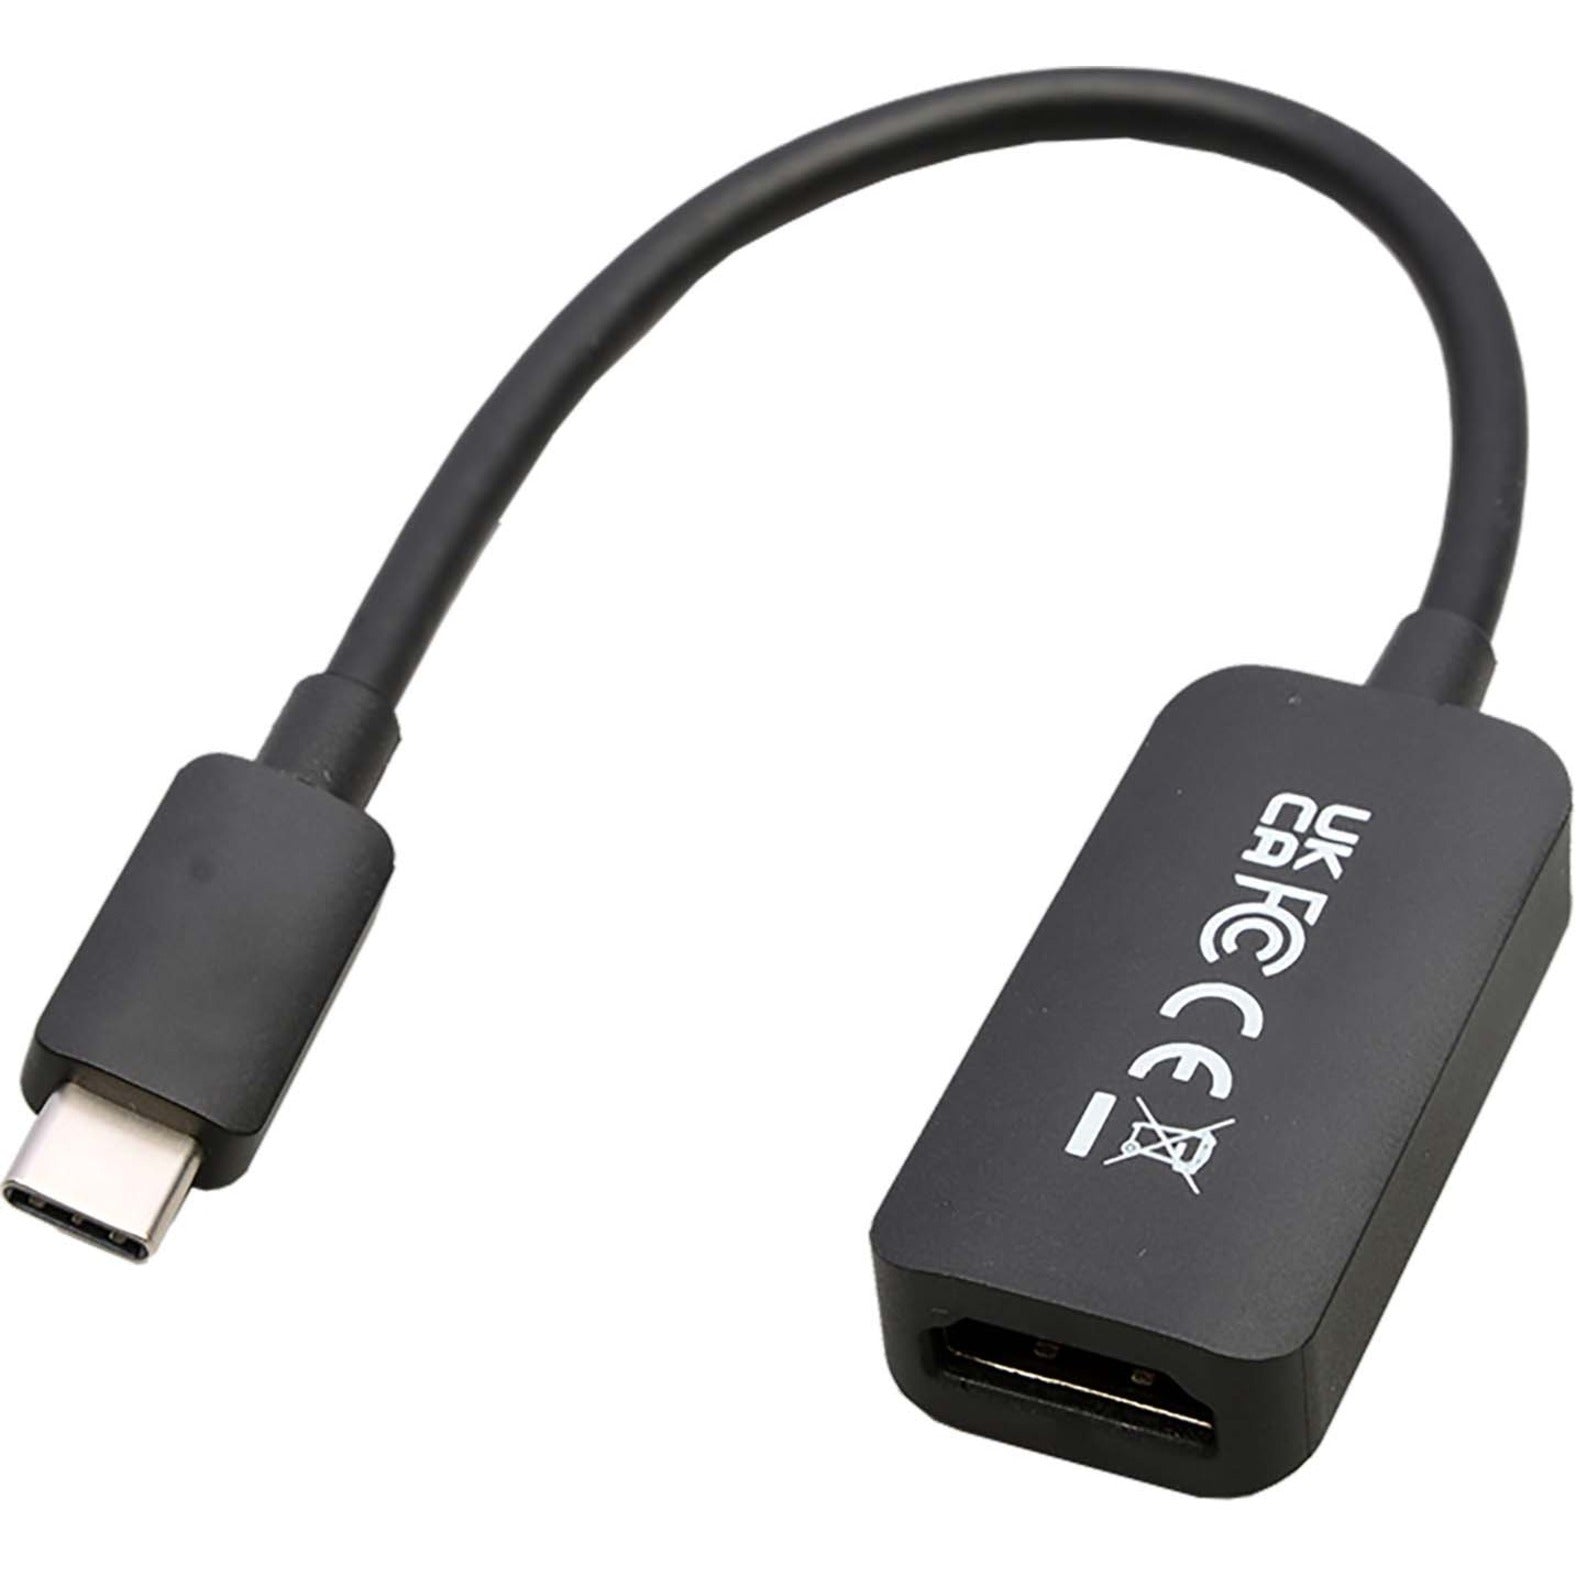 V7 V7USBCHDMI4K60HZ USB-C ذكر إلى HDMI 2.0 أنثى 21.6 جيجابت في الثانية Ultra HD 4K، محمي، ادخل واستخدم. V7 هو اسم العلامة التجارية.